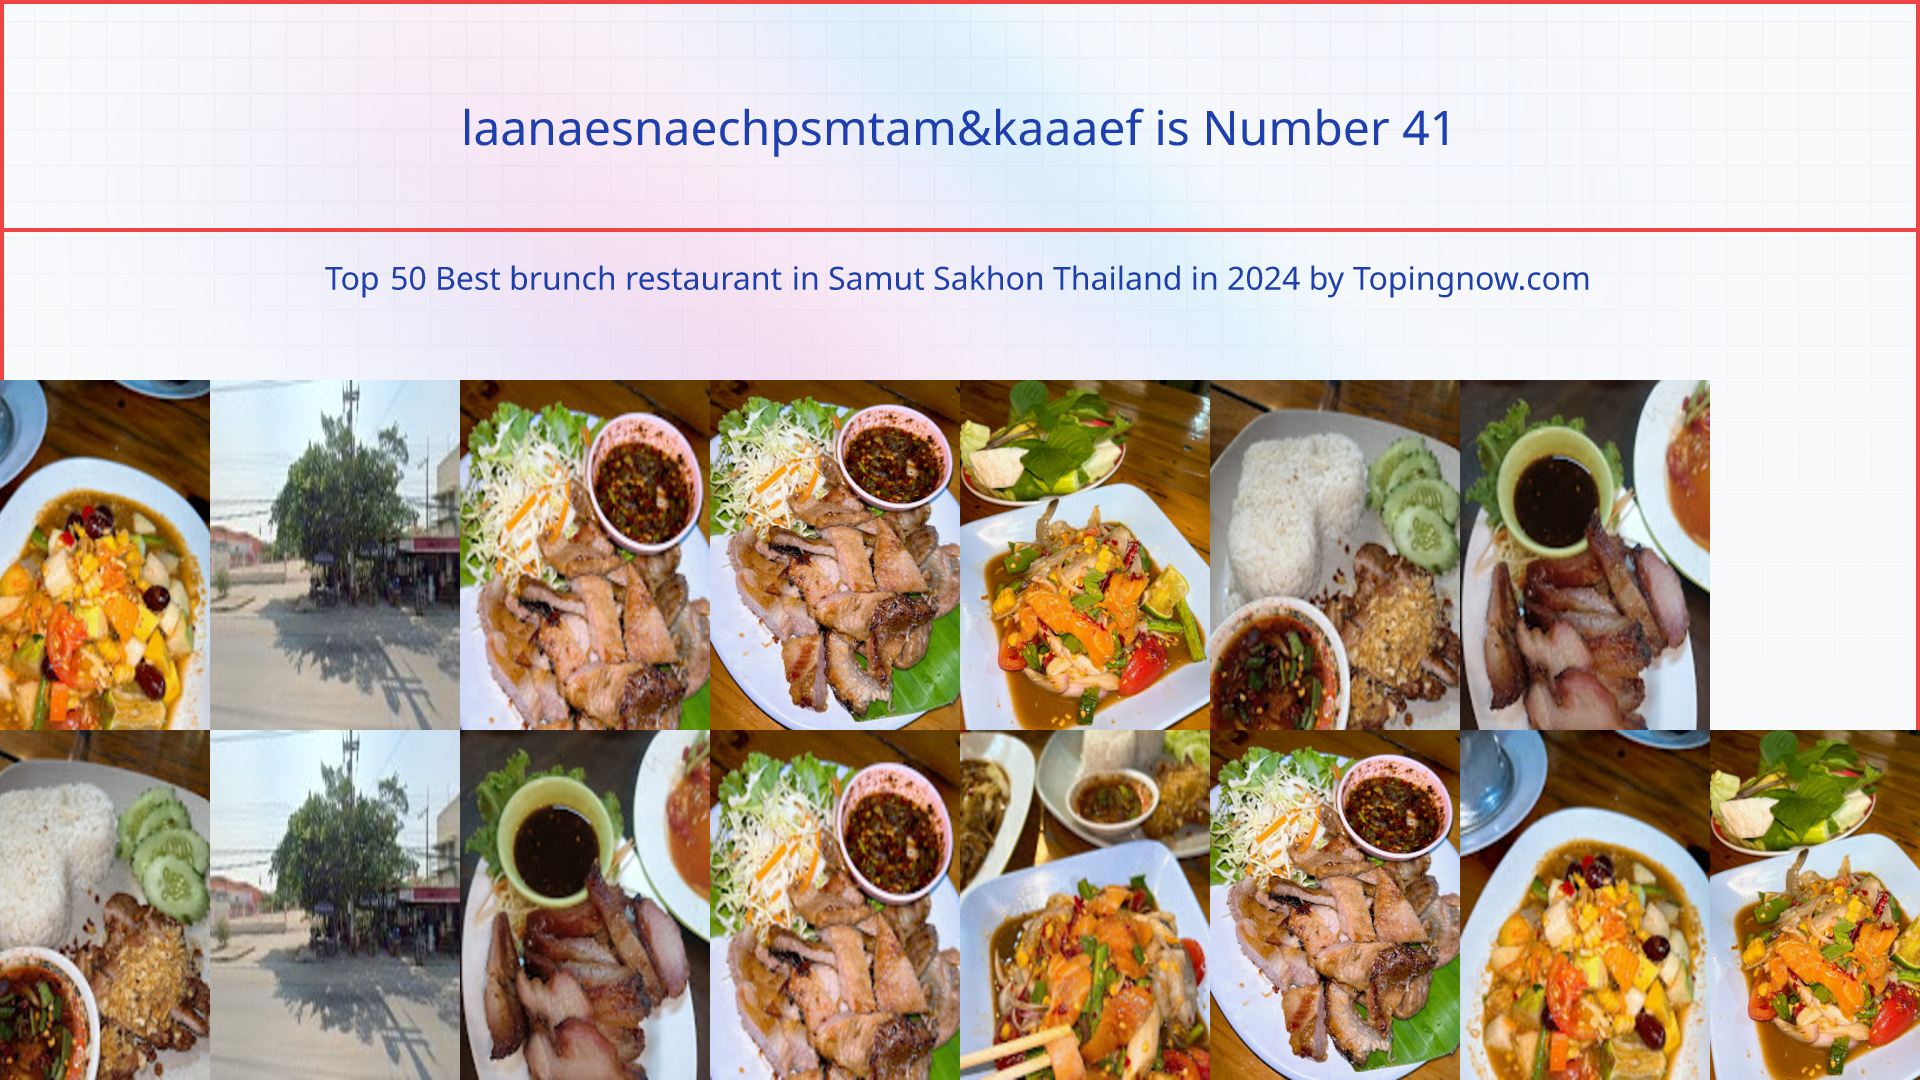 laanaesnaechpsmtam&kaaaef: Top 50 Best brunch restaurant in Samut Sakhon Thailand in 2024